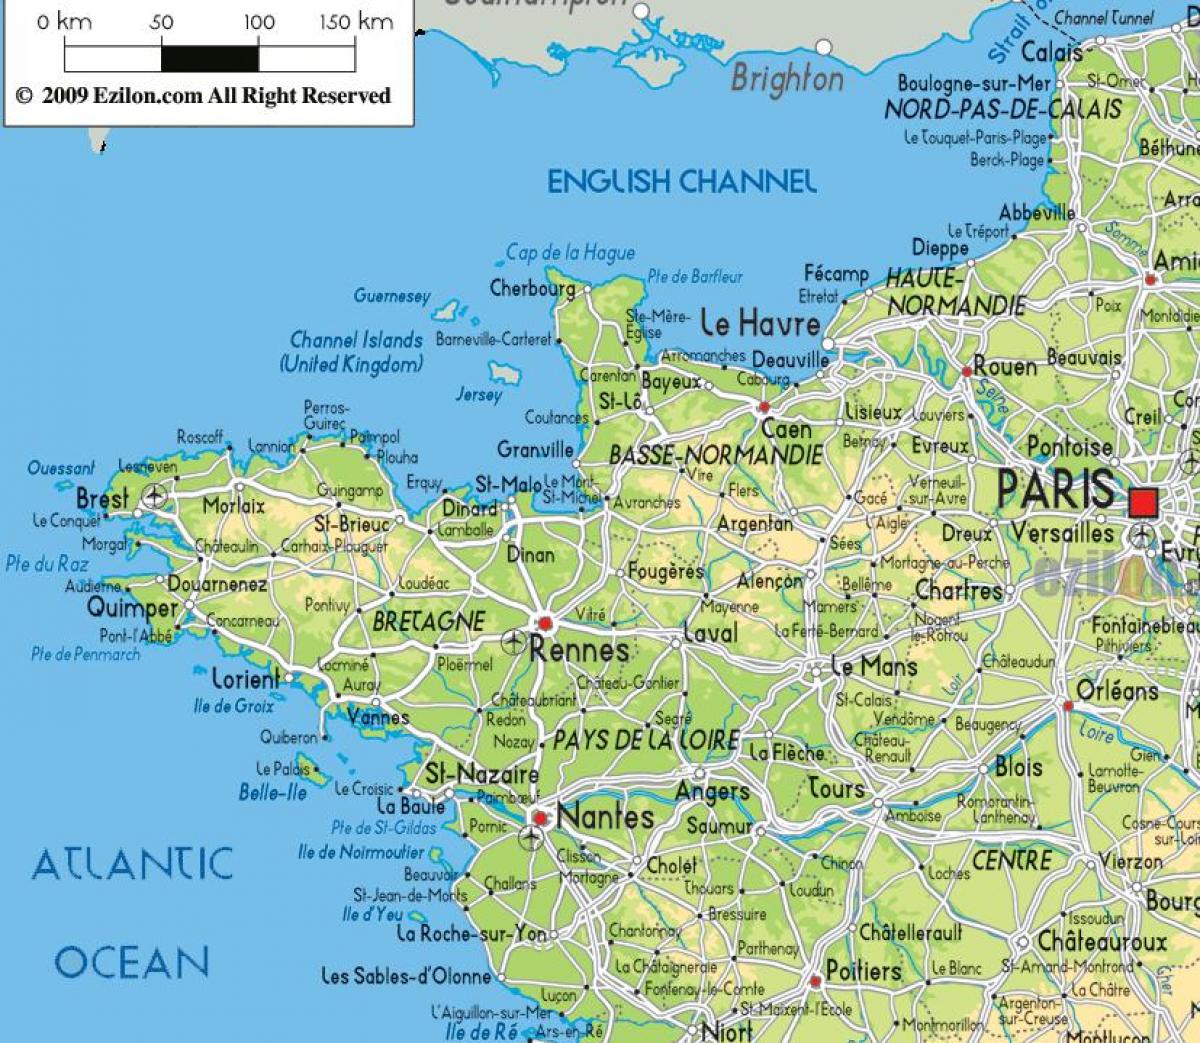 Mapa del noroeste de Francia - Mapa de Francia del norte occidental